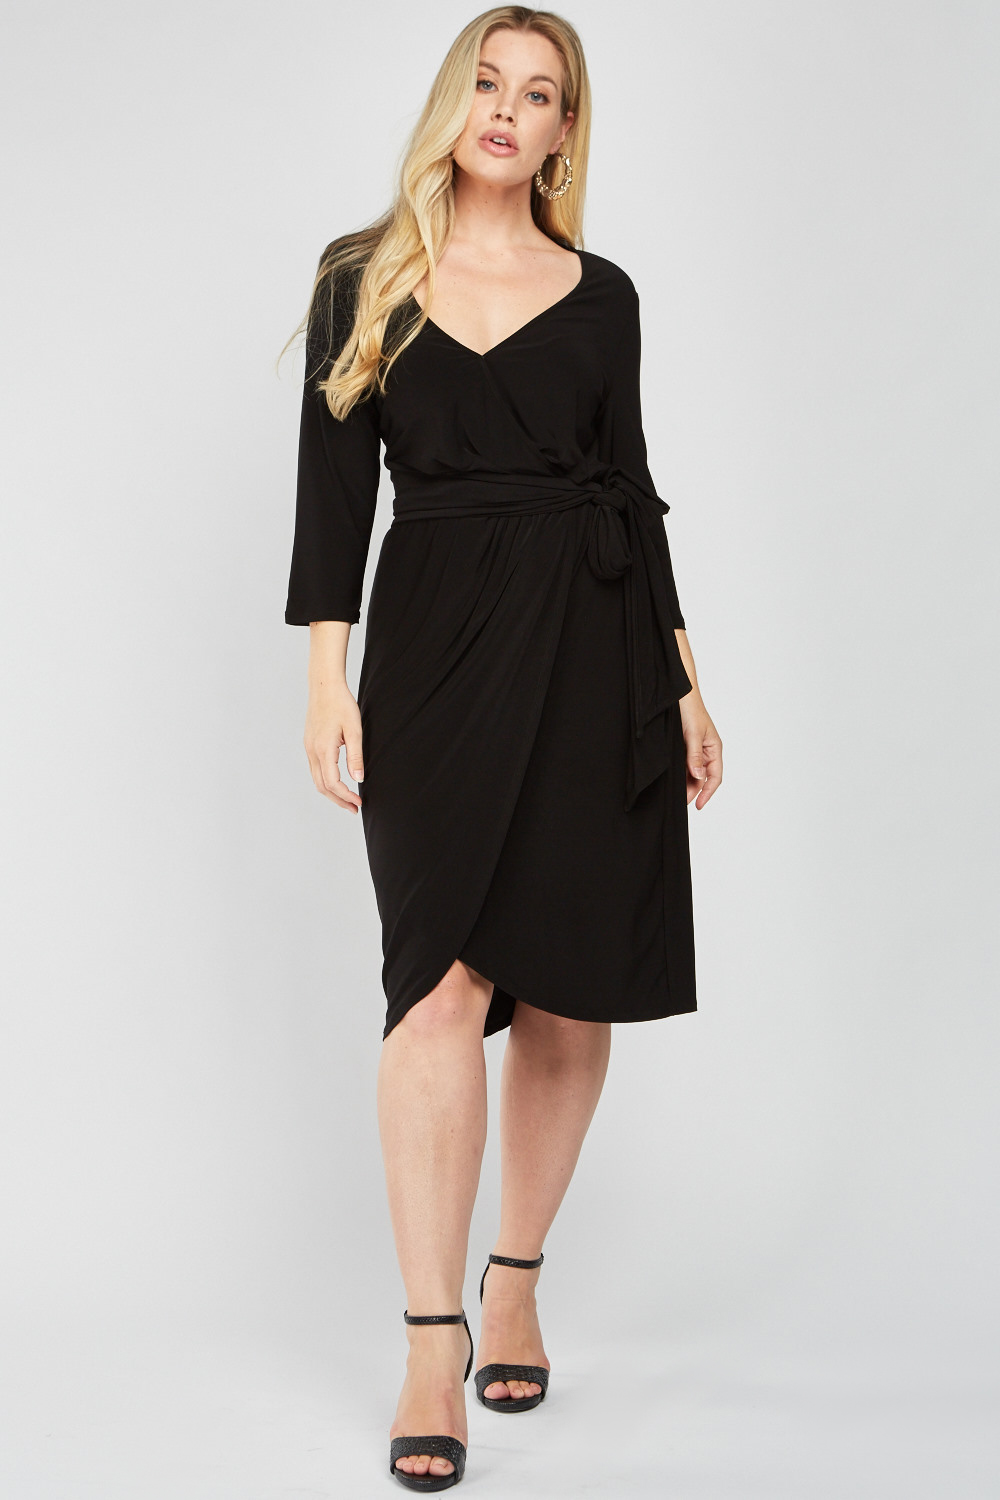 Black Midi Wrap Dress - Just $6